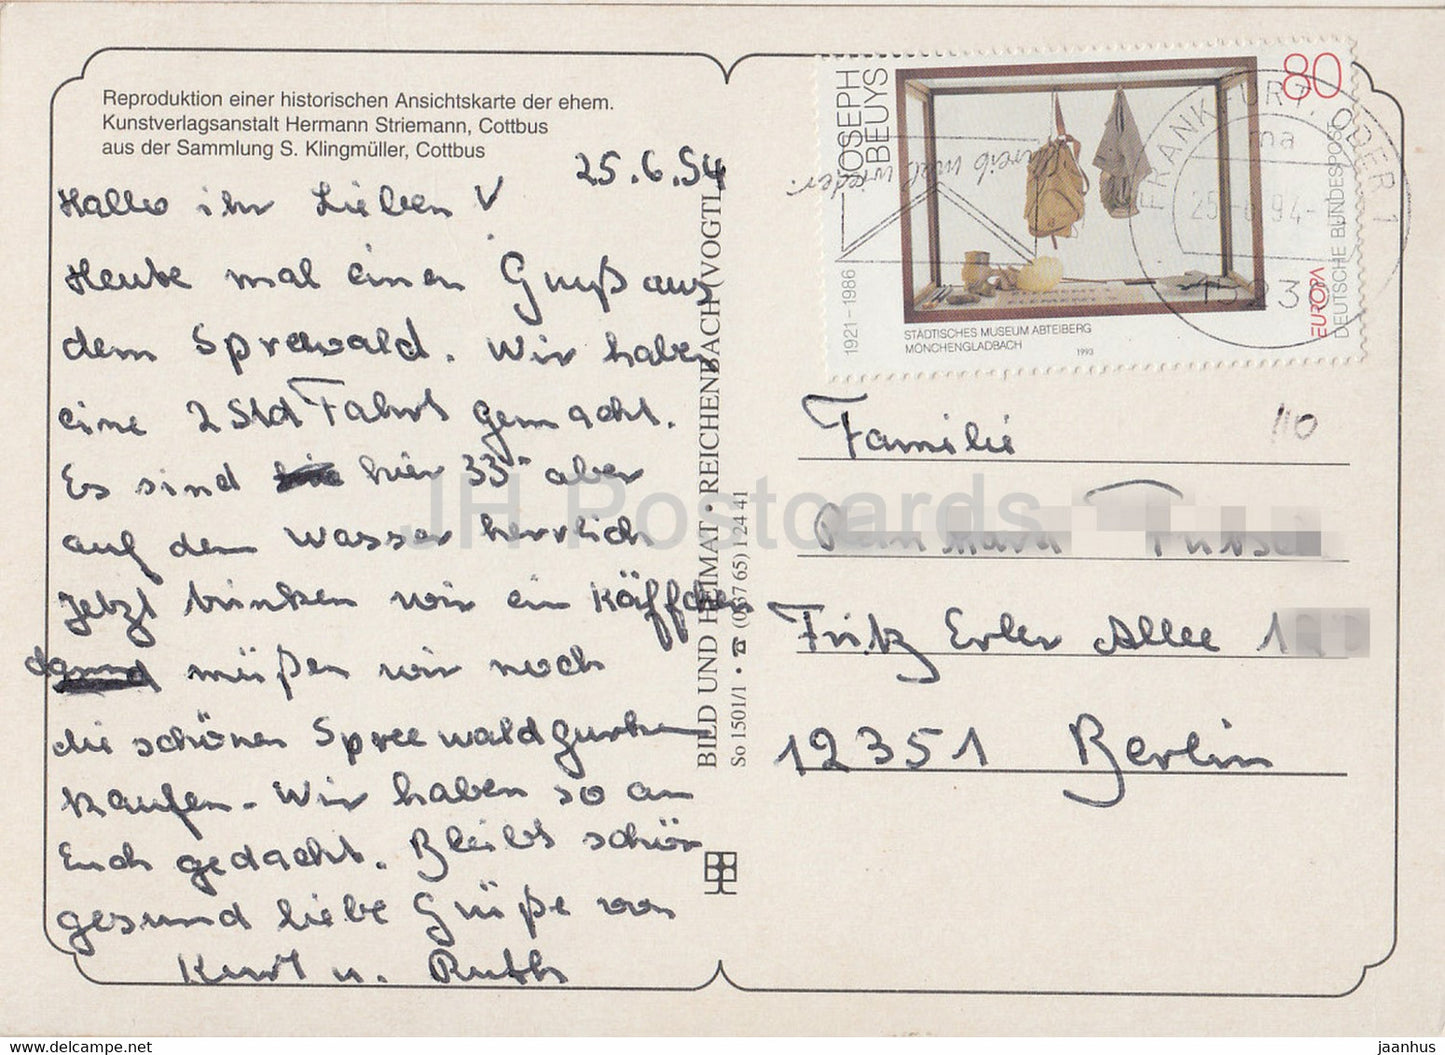 REPRODUCTION de carte postale ancienne - Femmes en bateau - costumes folkloriques - 1994 - Allemagne - occasion